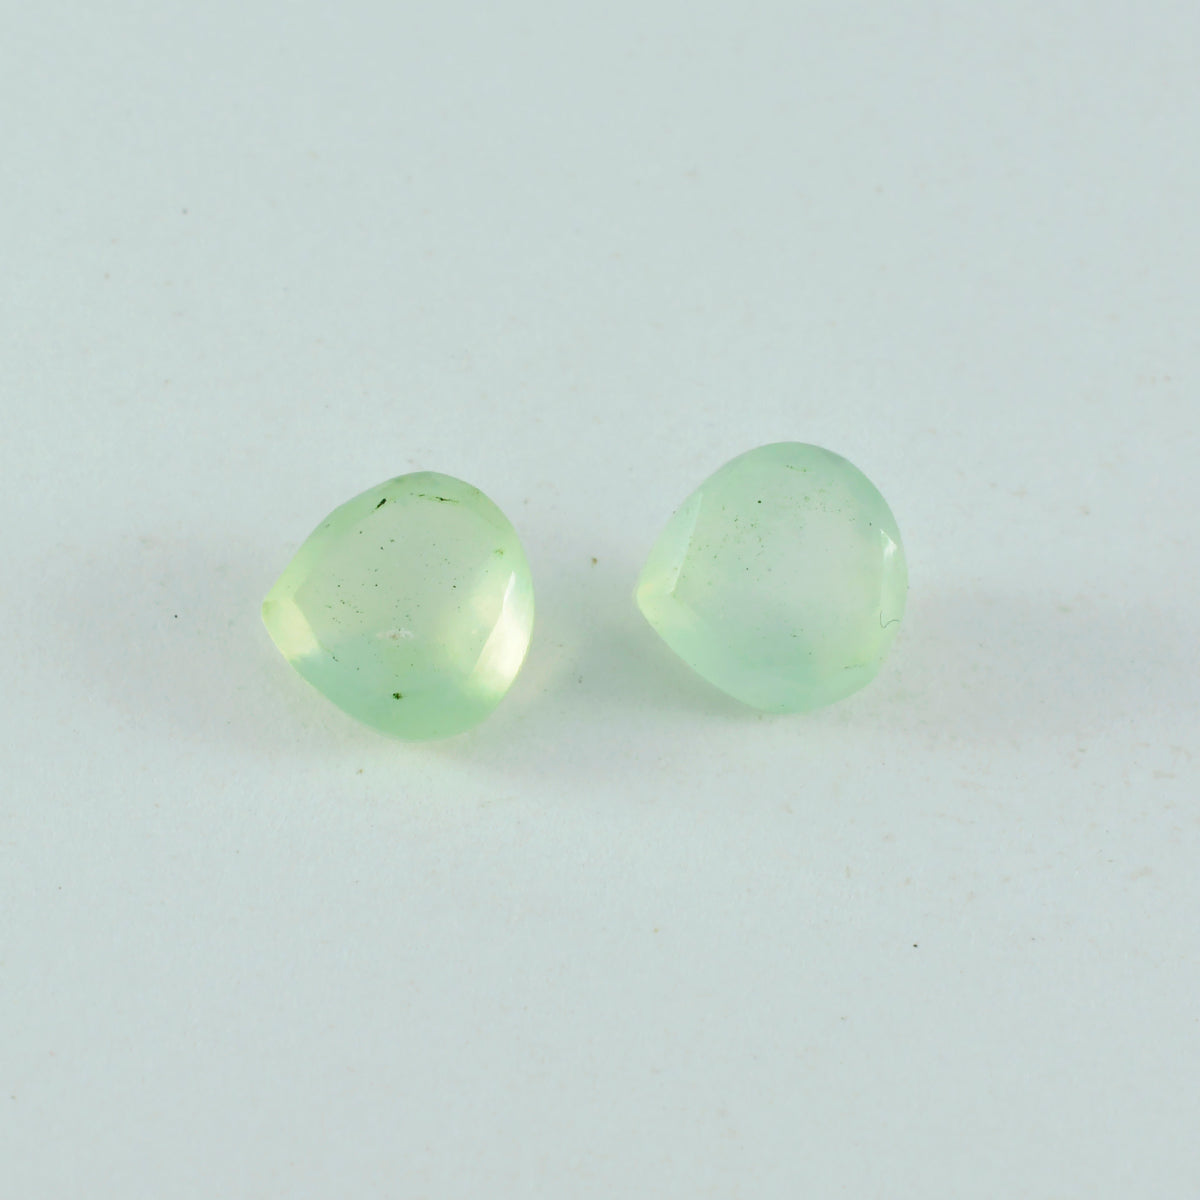 riyogems 1шт зеленый пренит ограненный 5x5 мм в форме сердца превосходное качество россыпь драгоценных камней